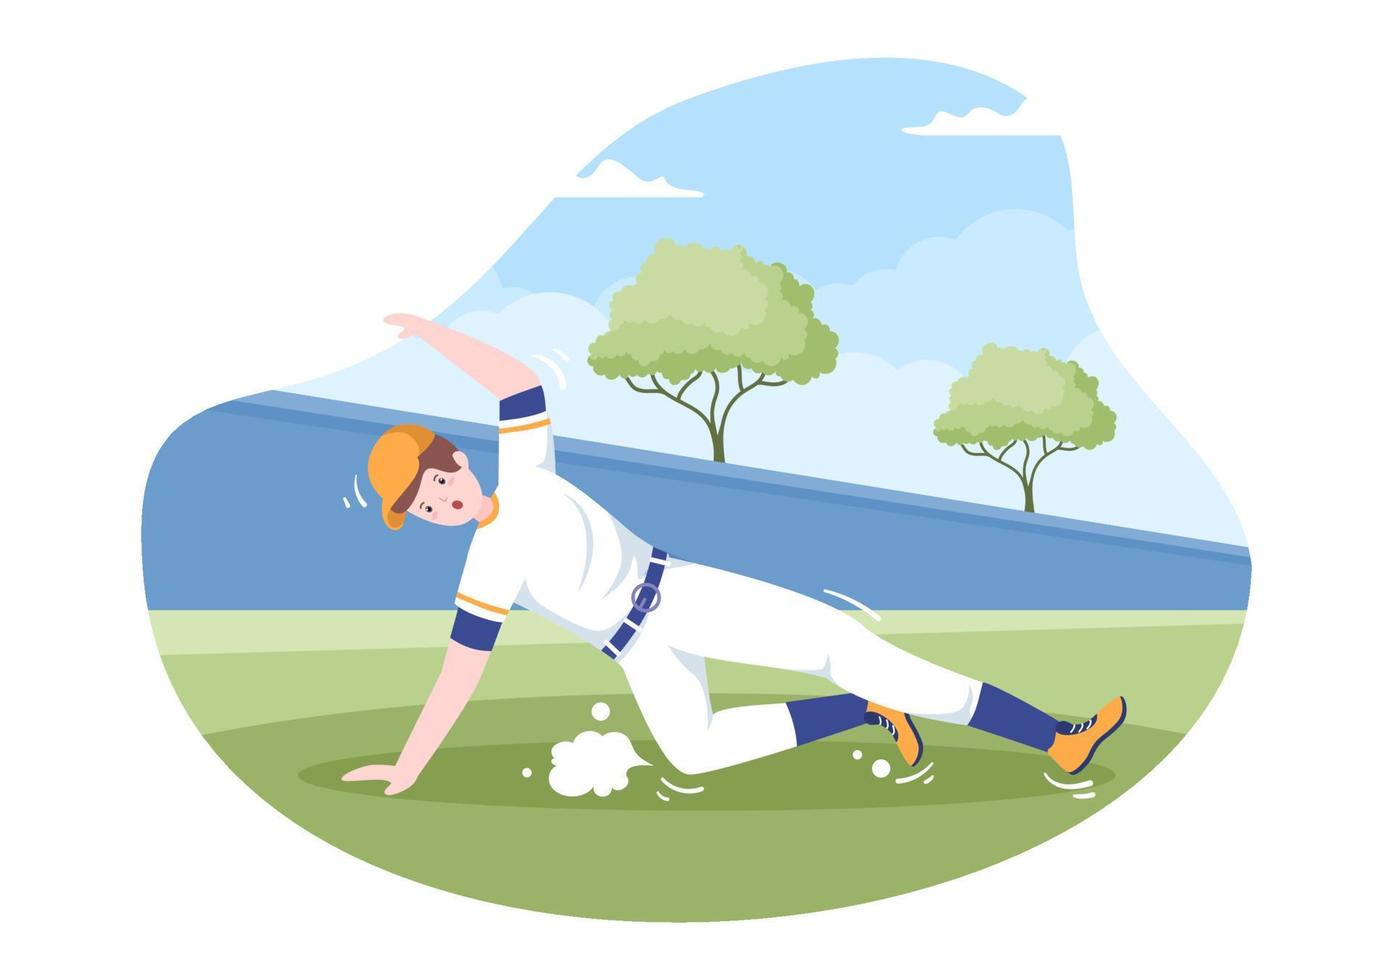 Baseballspieler werfen, fangen oder schlagen einen Ball mit Fledermäusen und Handschuhen, die Uniform auf dem Platz in flacher Cartoon-Illustration tragen vektor